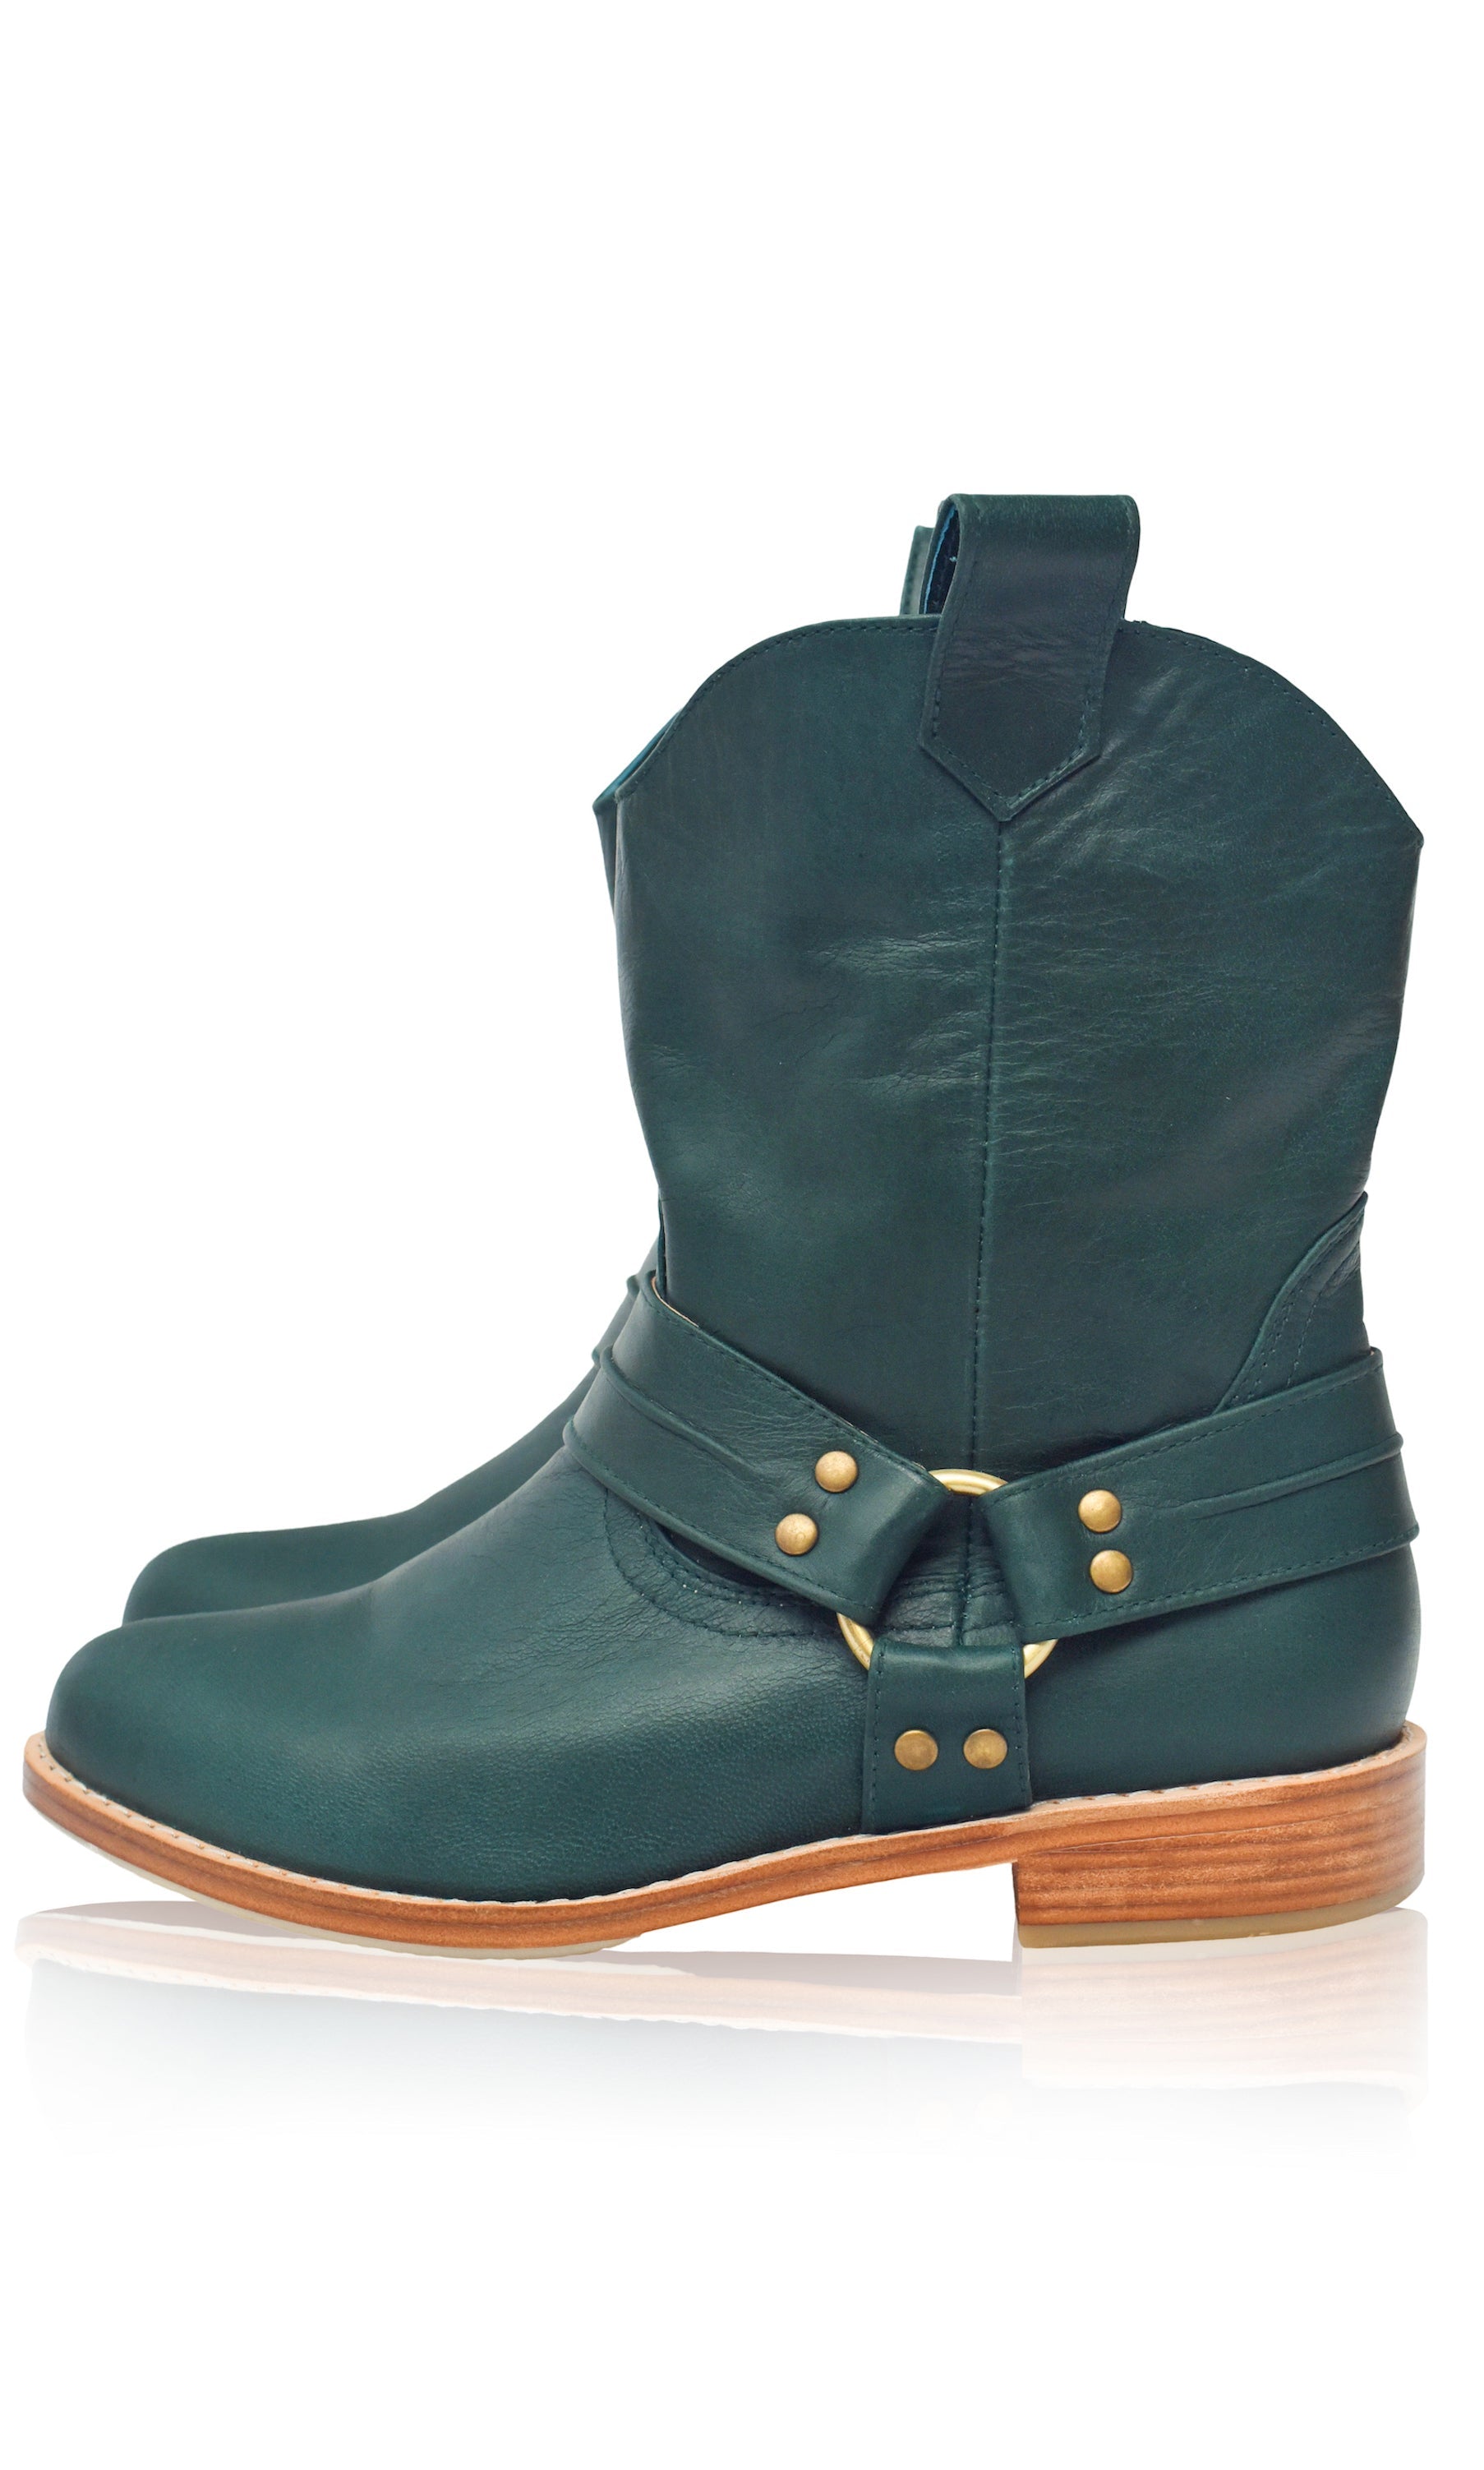 Cali Leather Boots (Sz. 5 & 7.5, 10) ELF